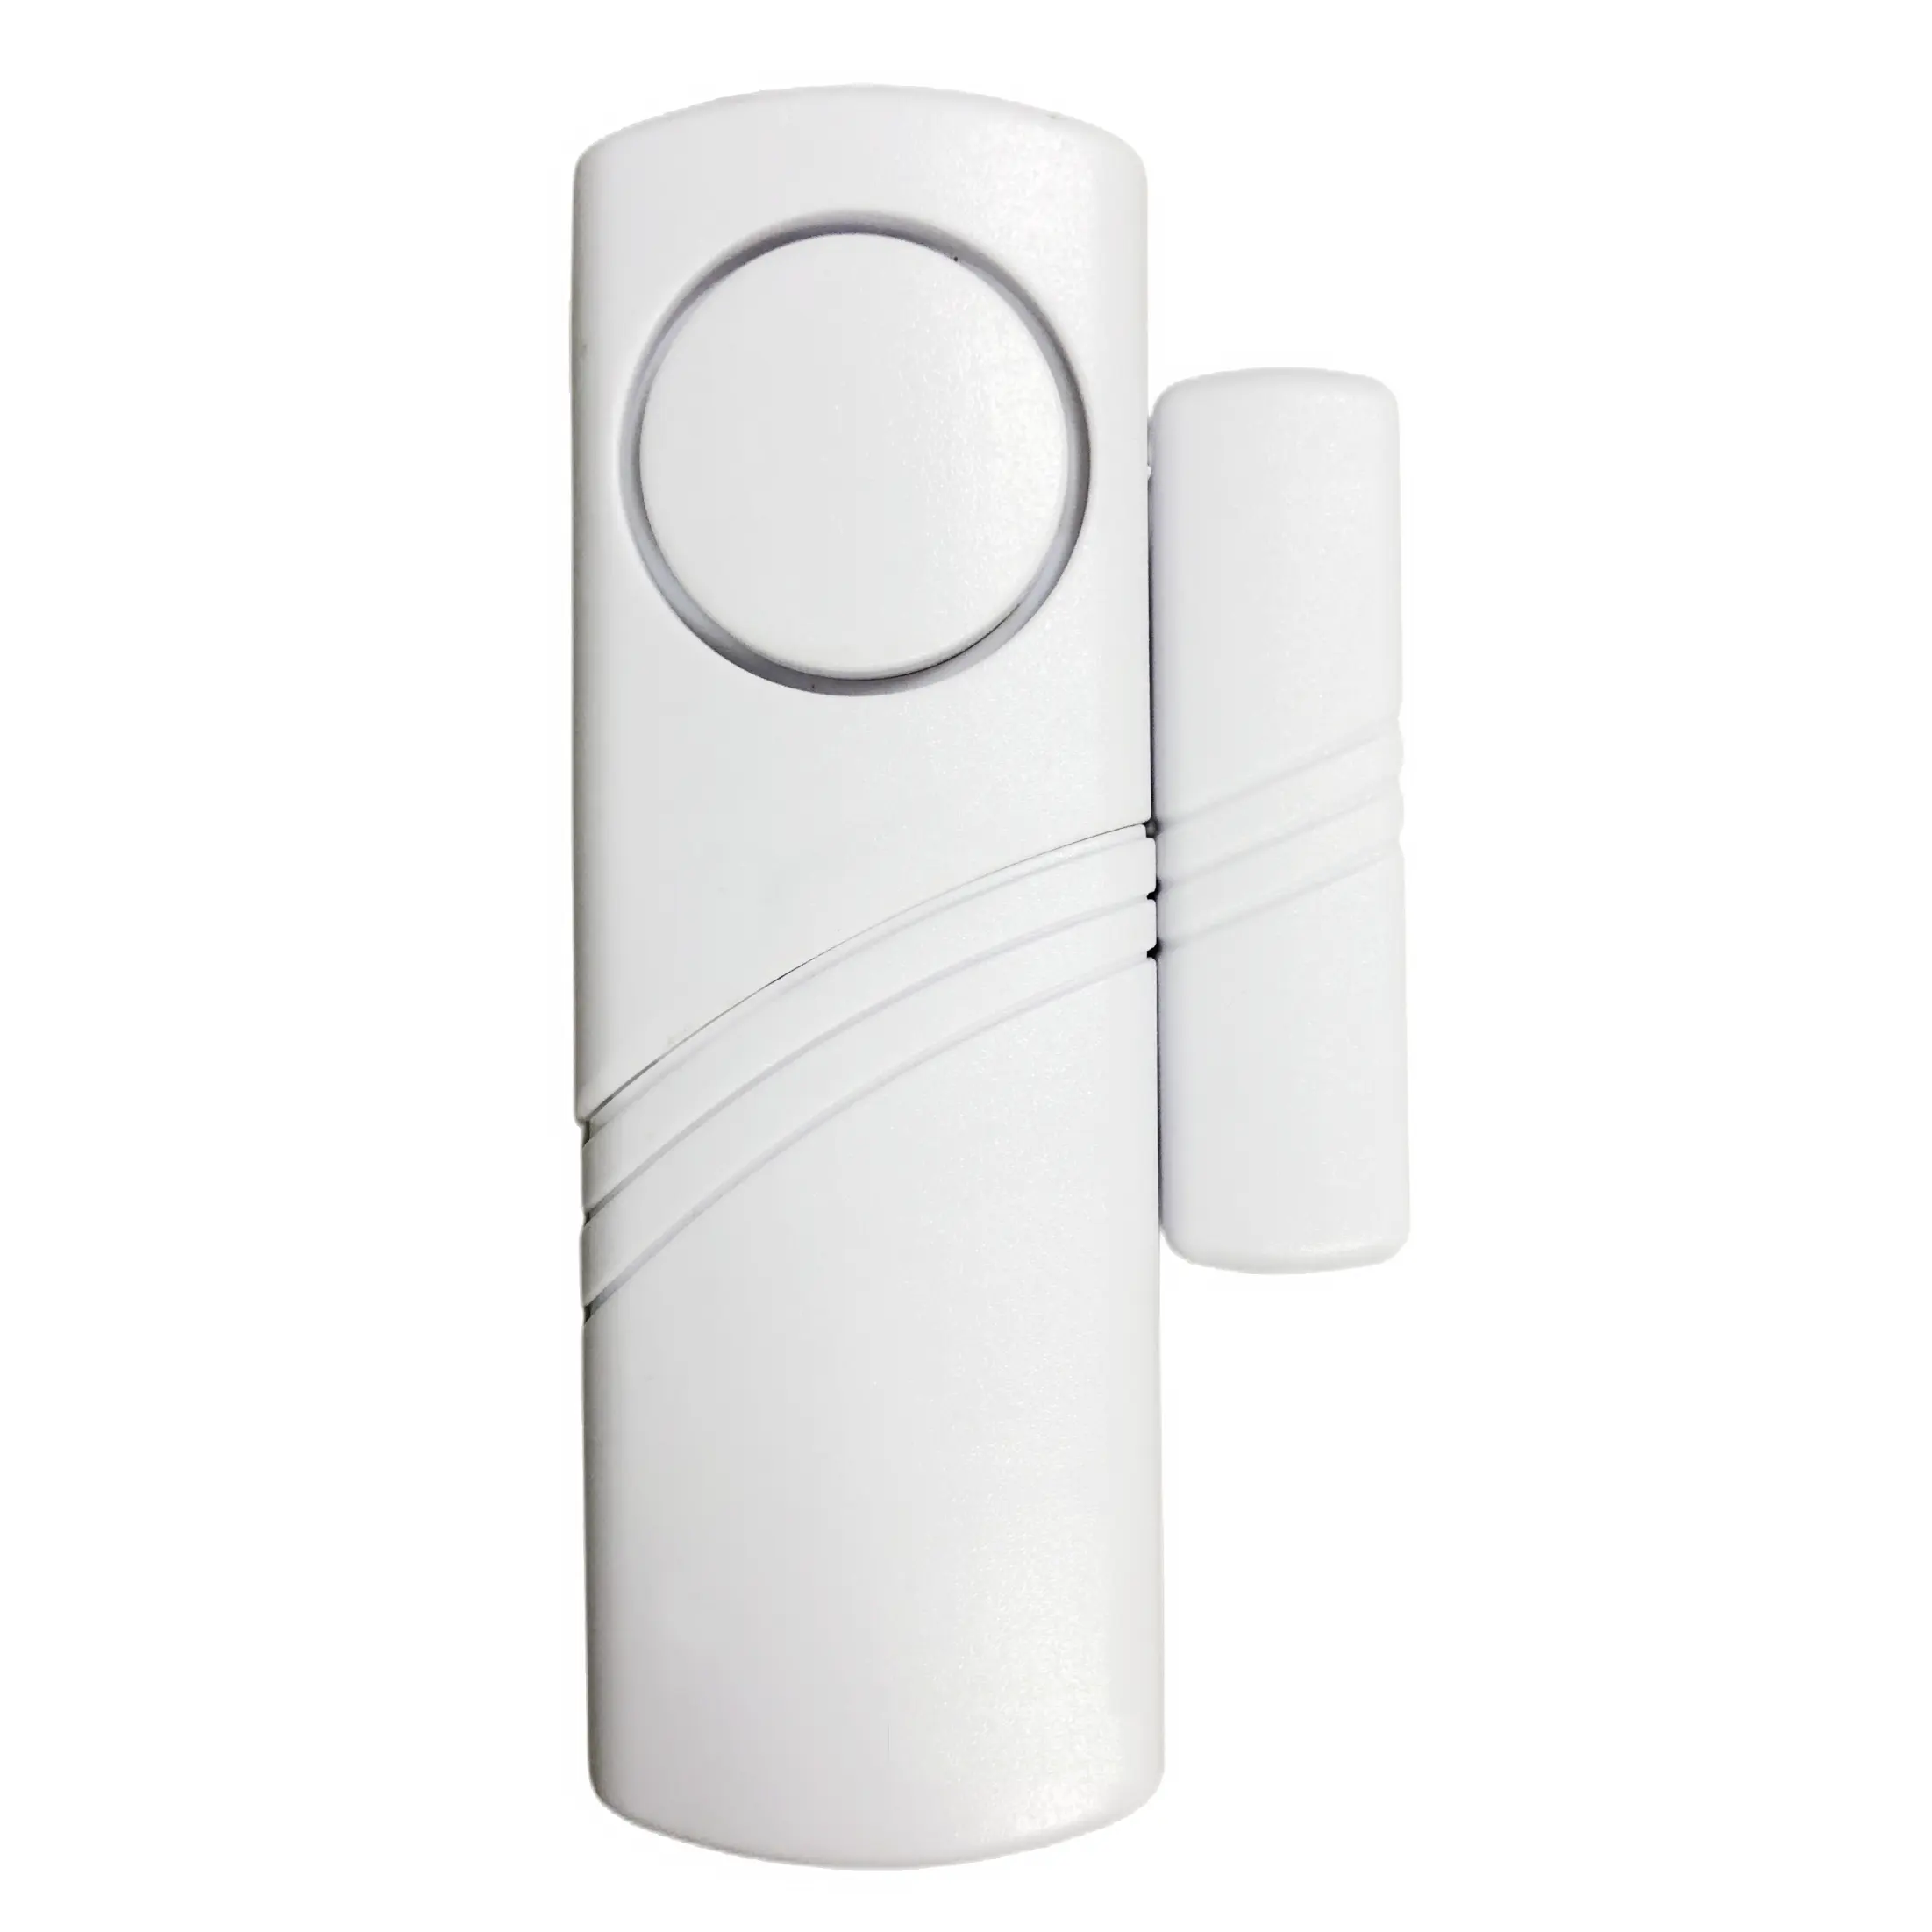 Kurulumu kolay sıcak satış penceresi/kapı alarmı manyetik kişisel Alarm kapalı akıllı ev Alarm sistemi